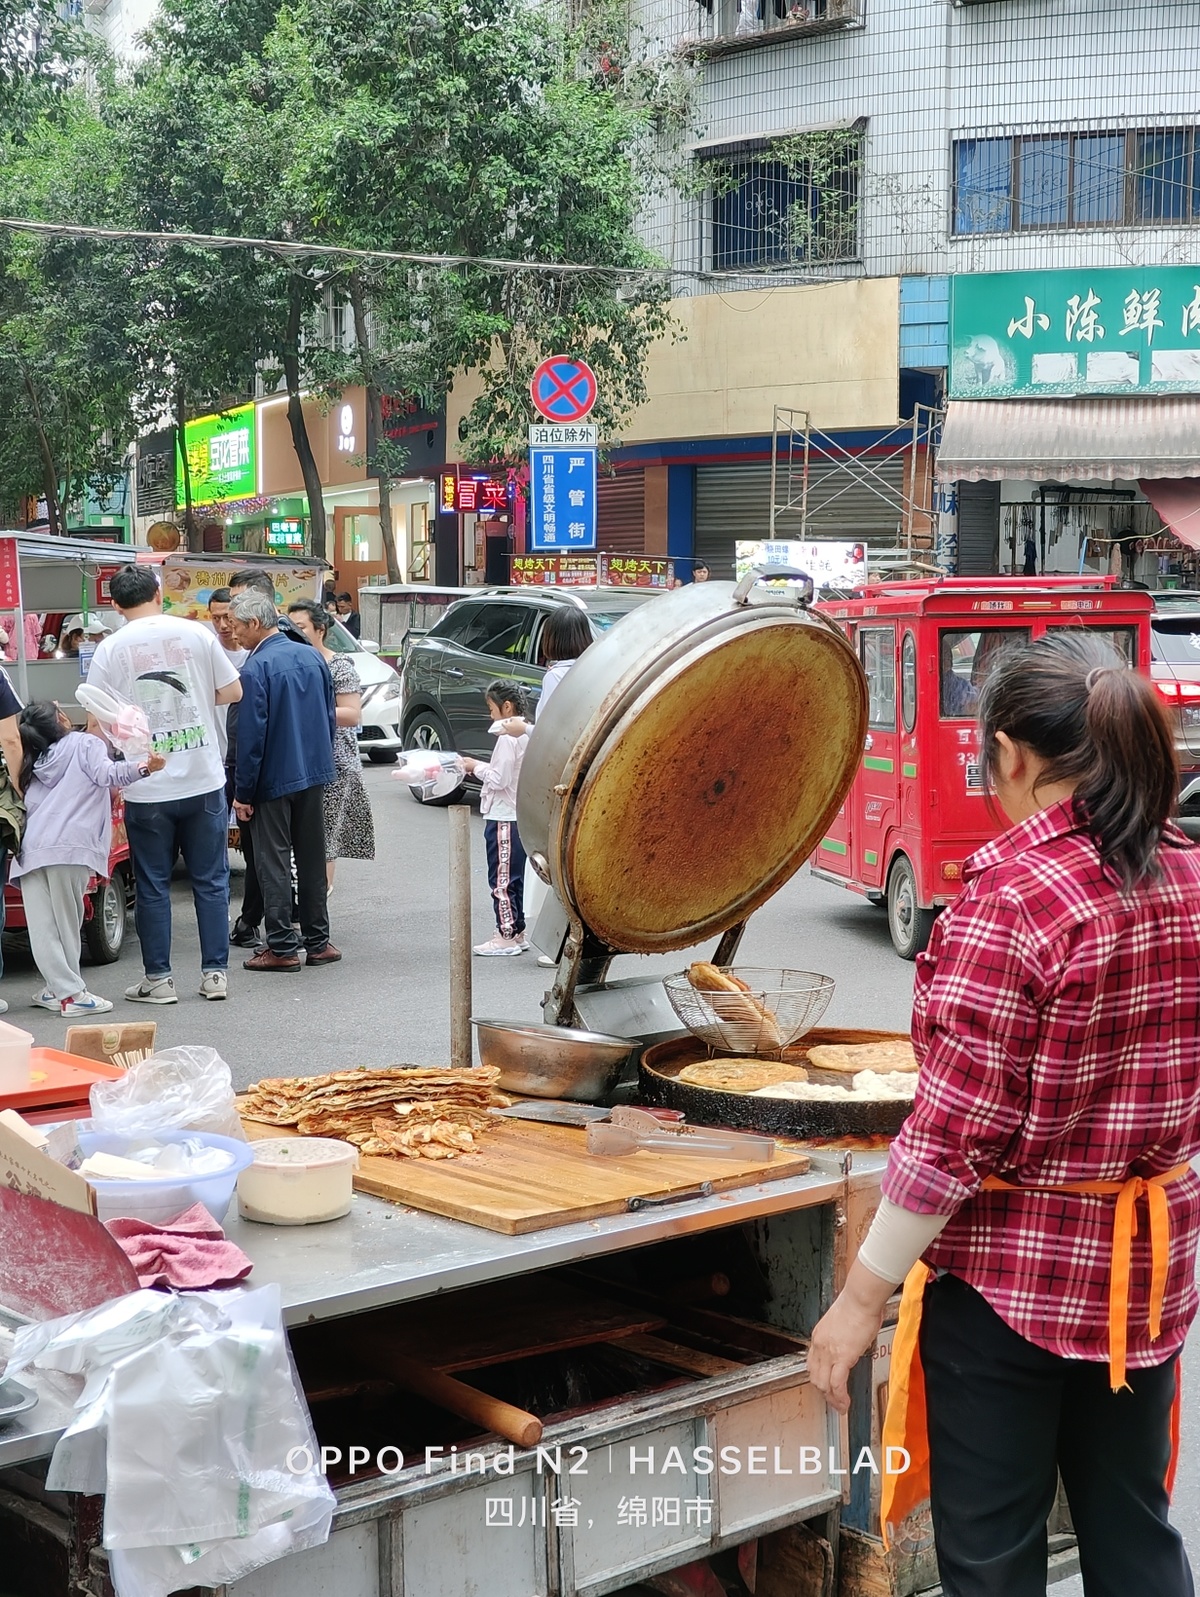 一位妇女在街上烹饪食物 周围有人们站着。